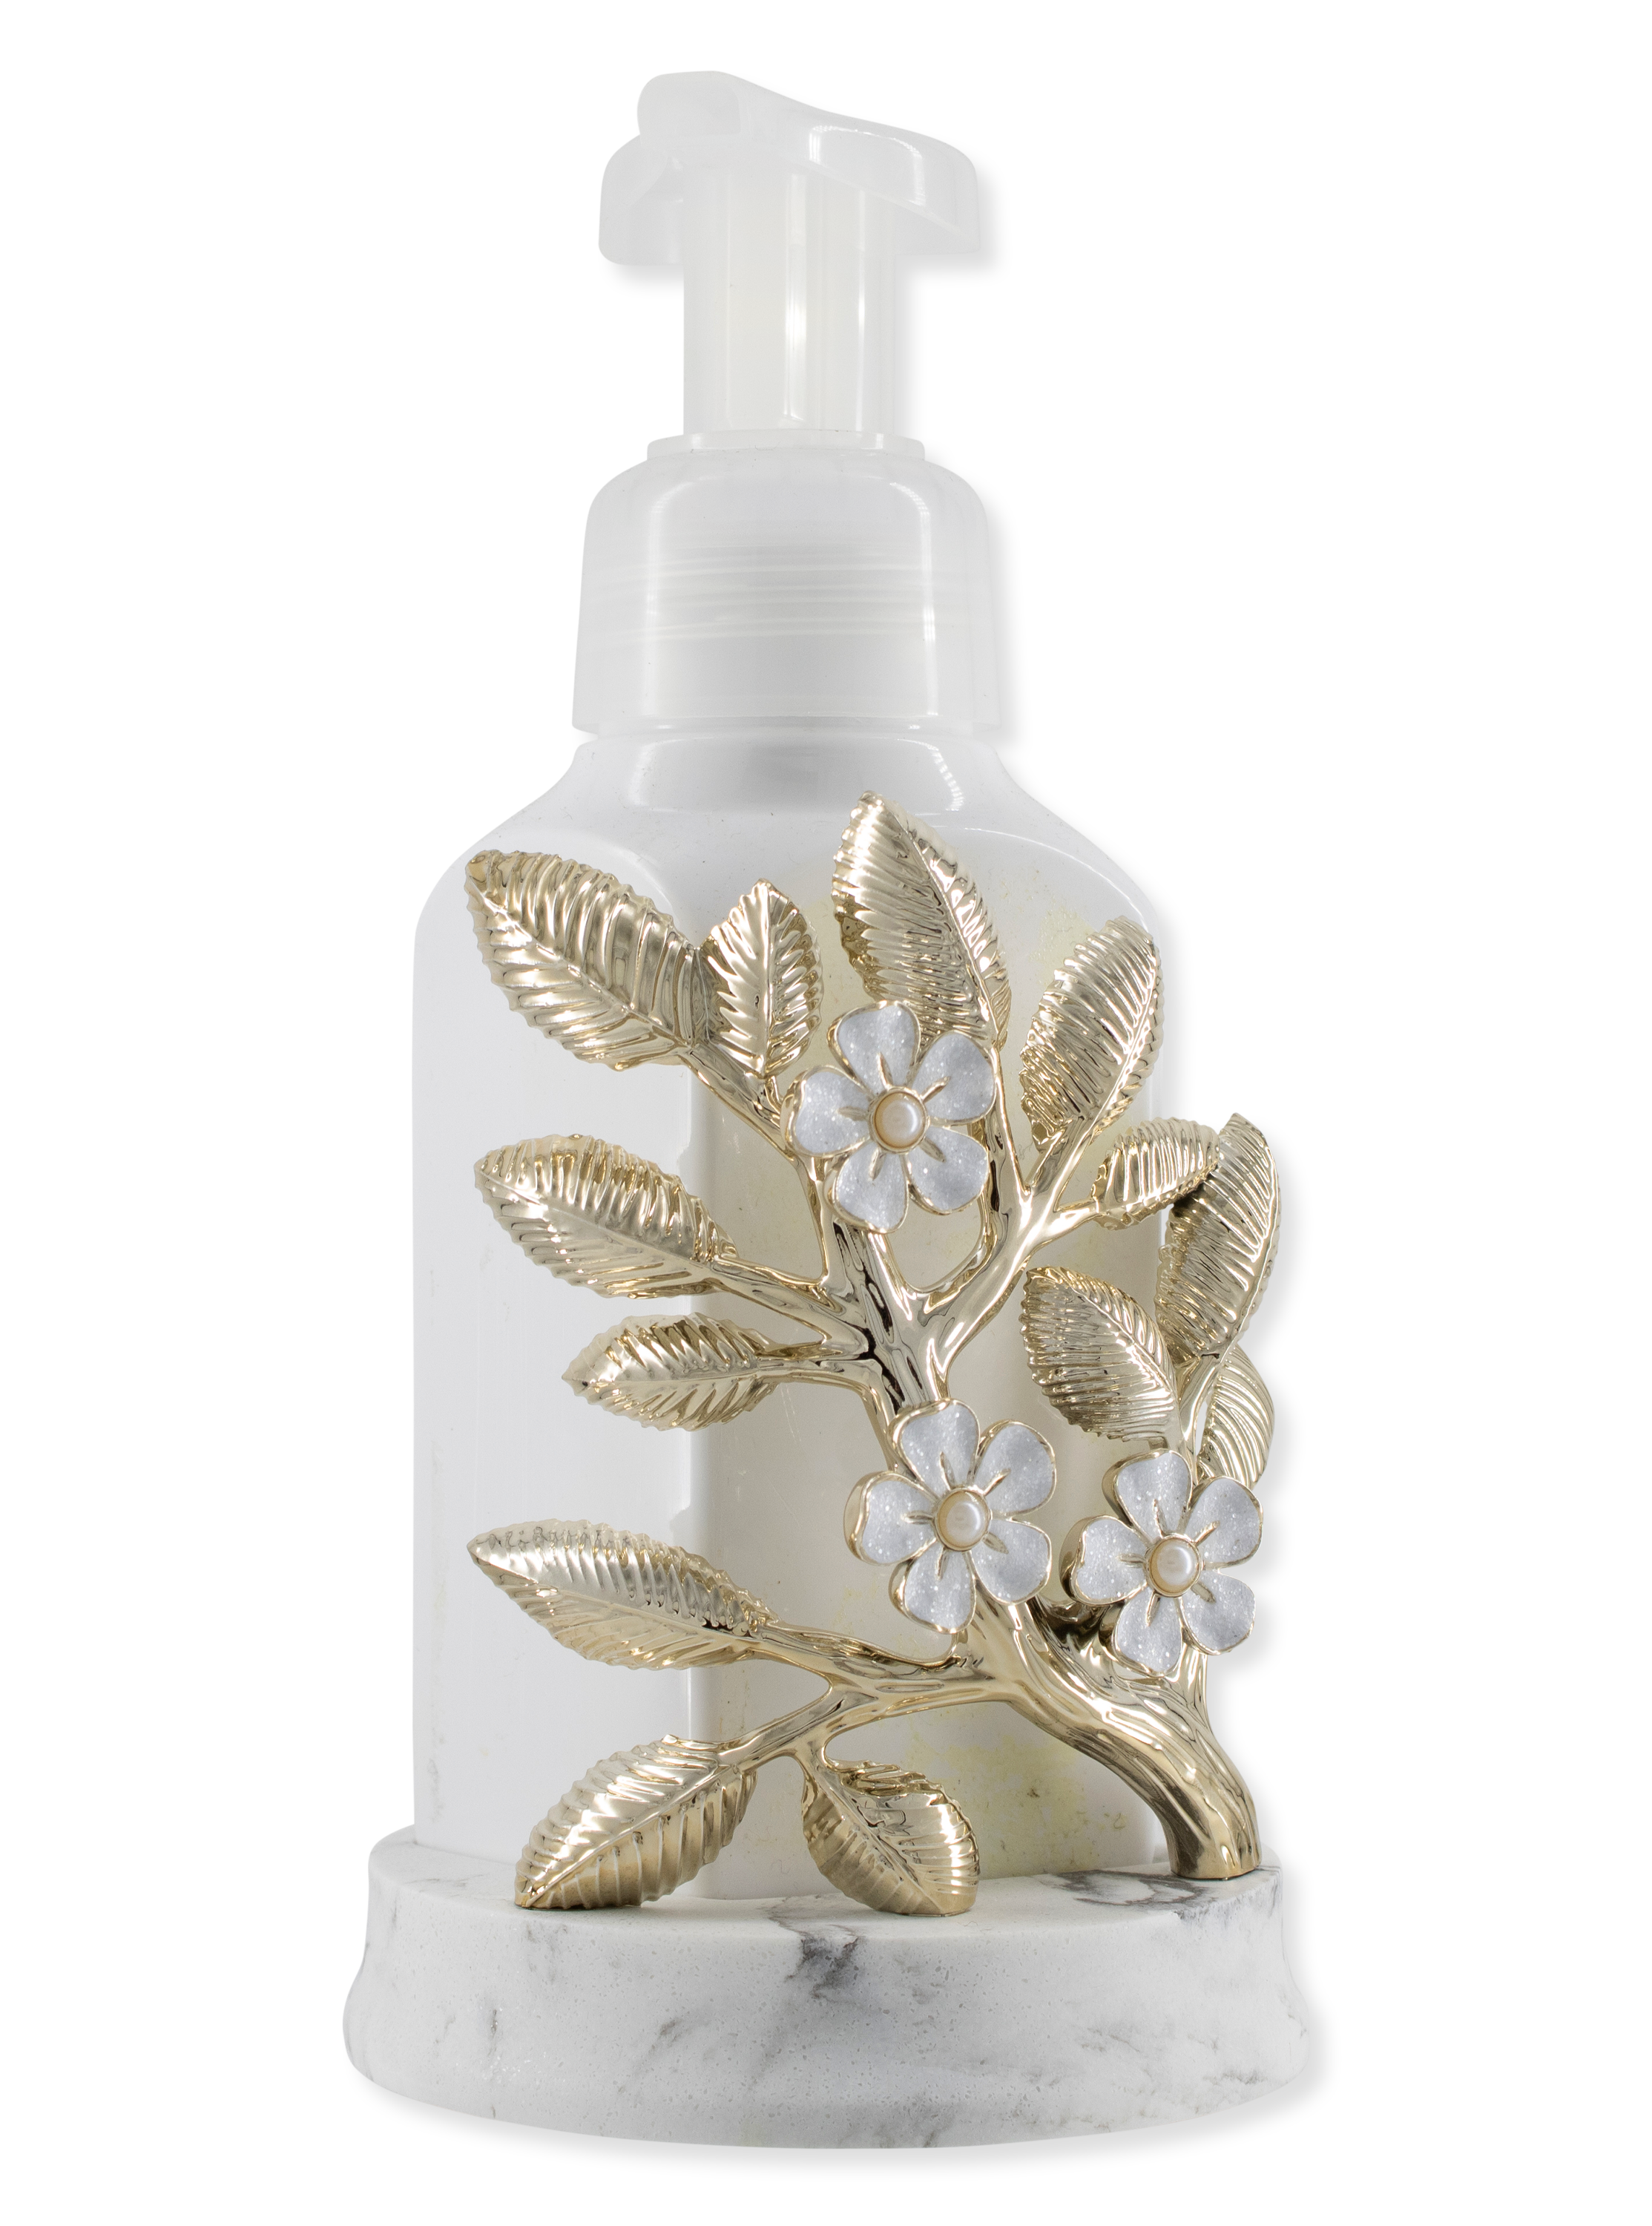 Porte-savon pour le savon en mousse - industrie florale